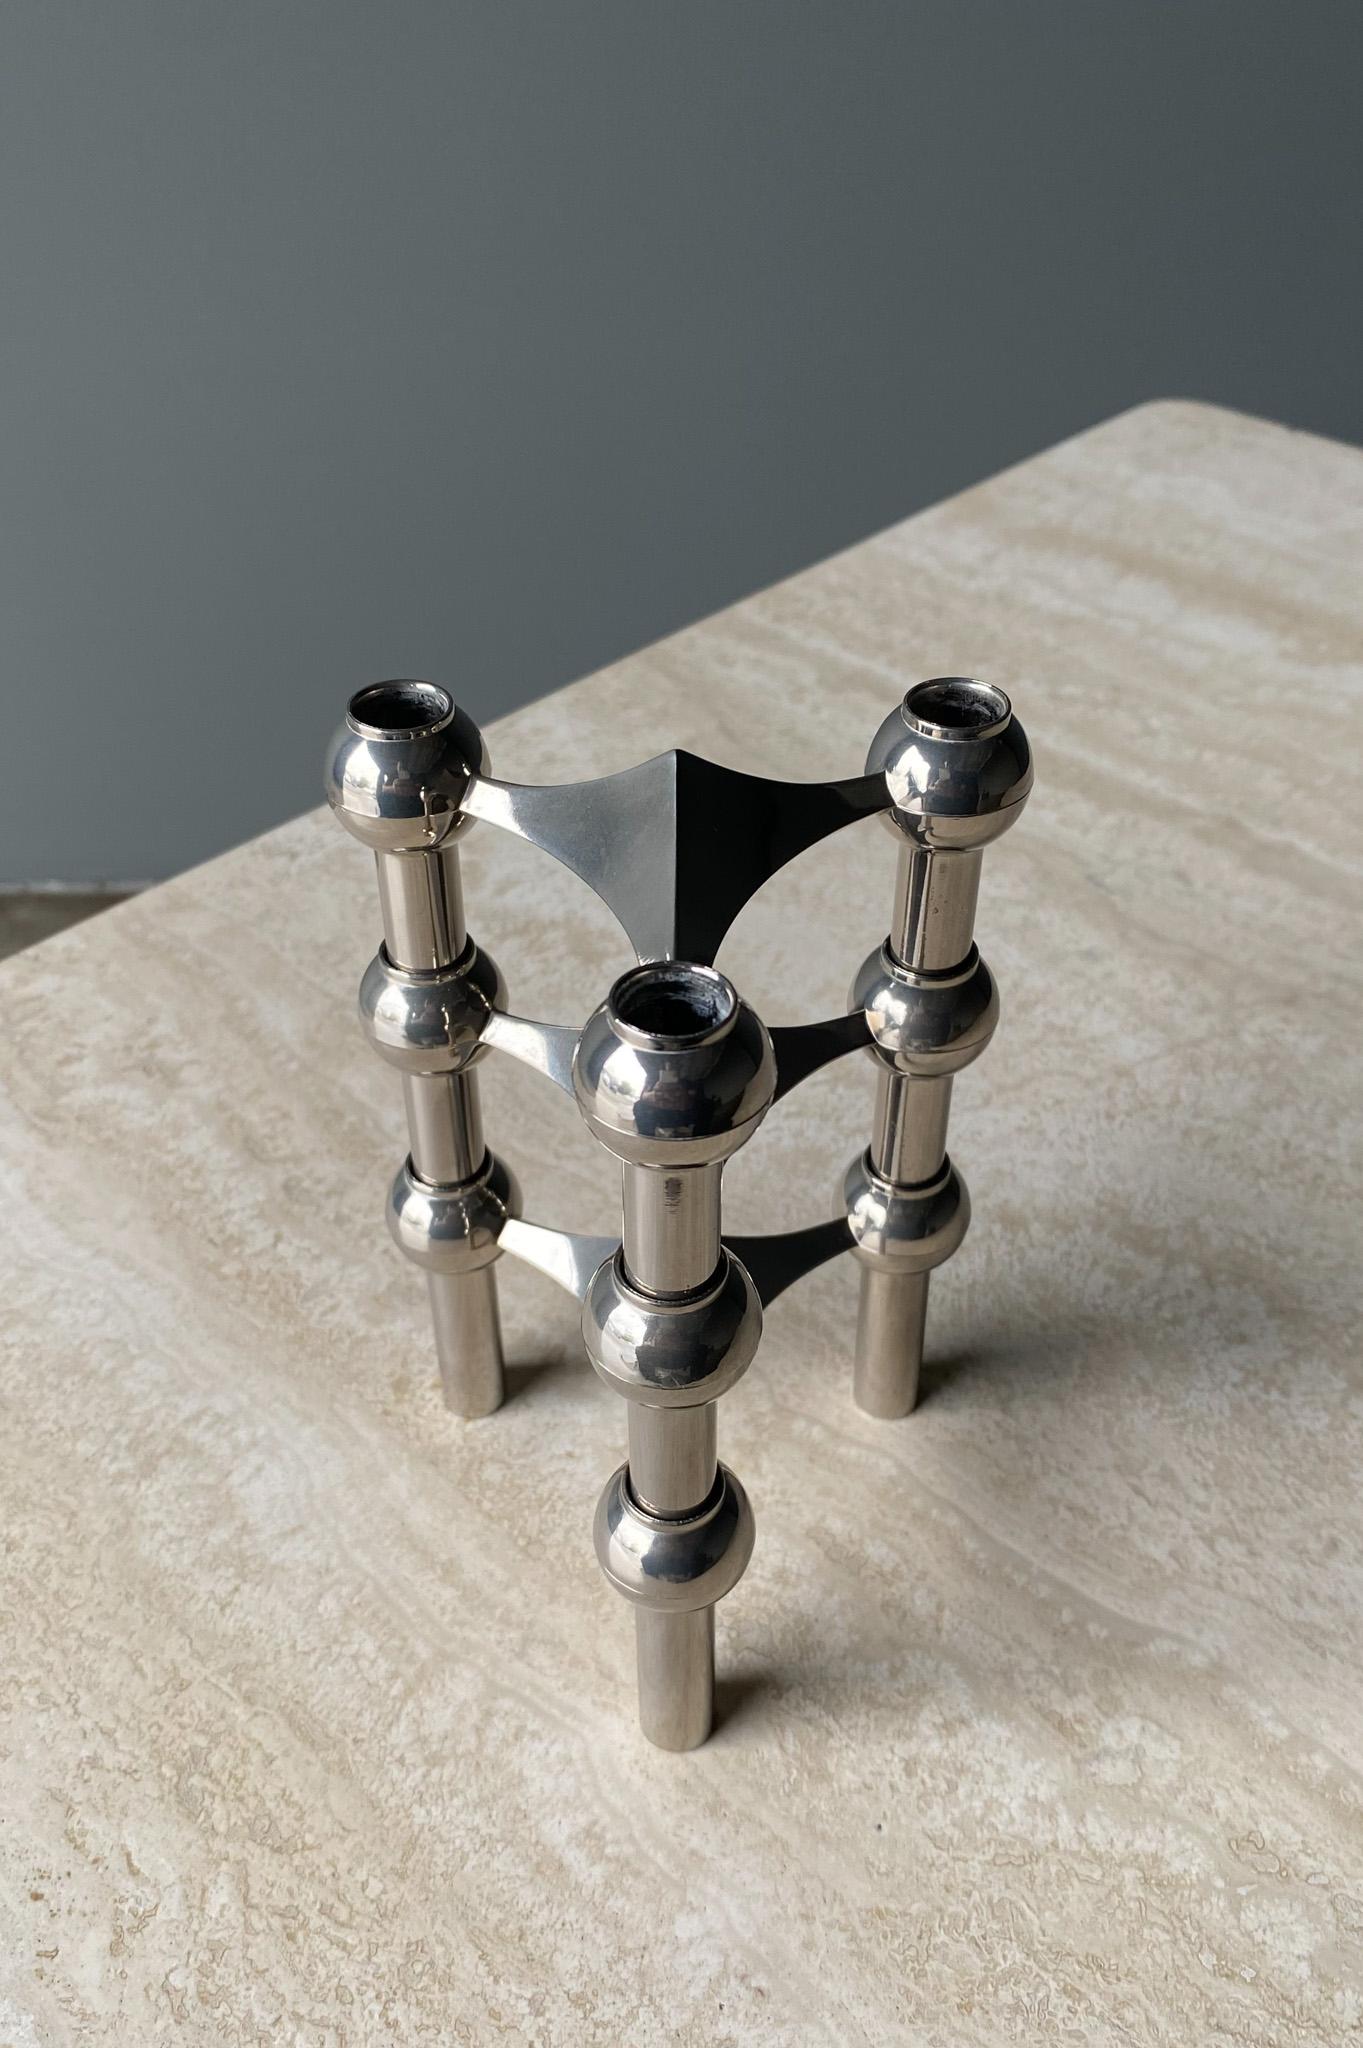 Stoff Nagel Candleholder Designed by Werner Stoff for Metalworker Hans Nagel 3